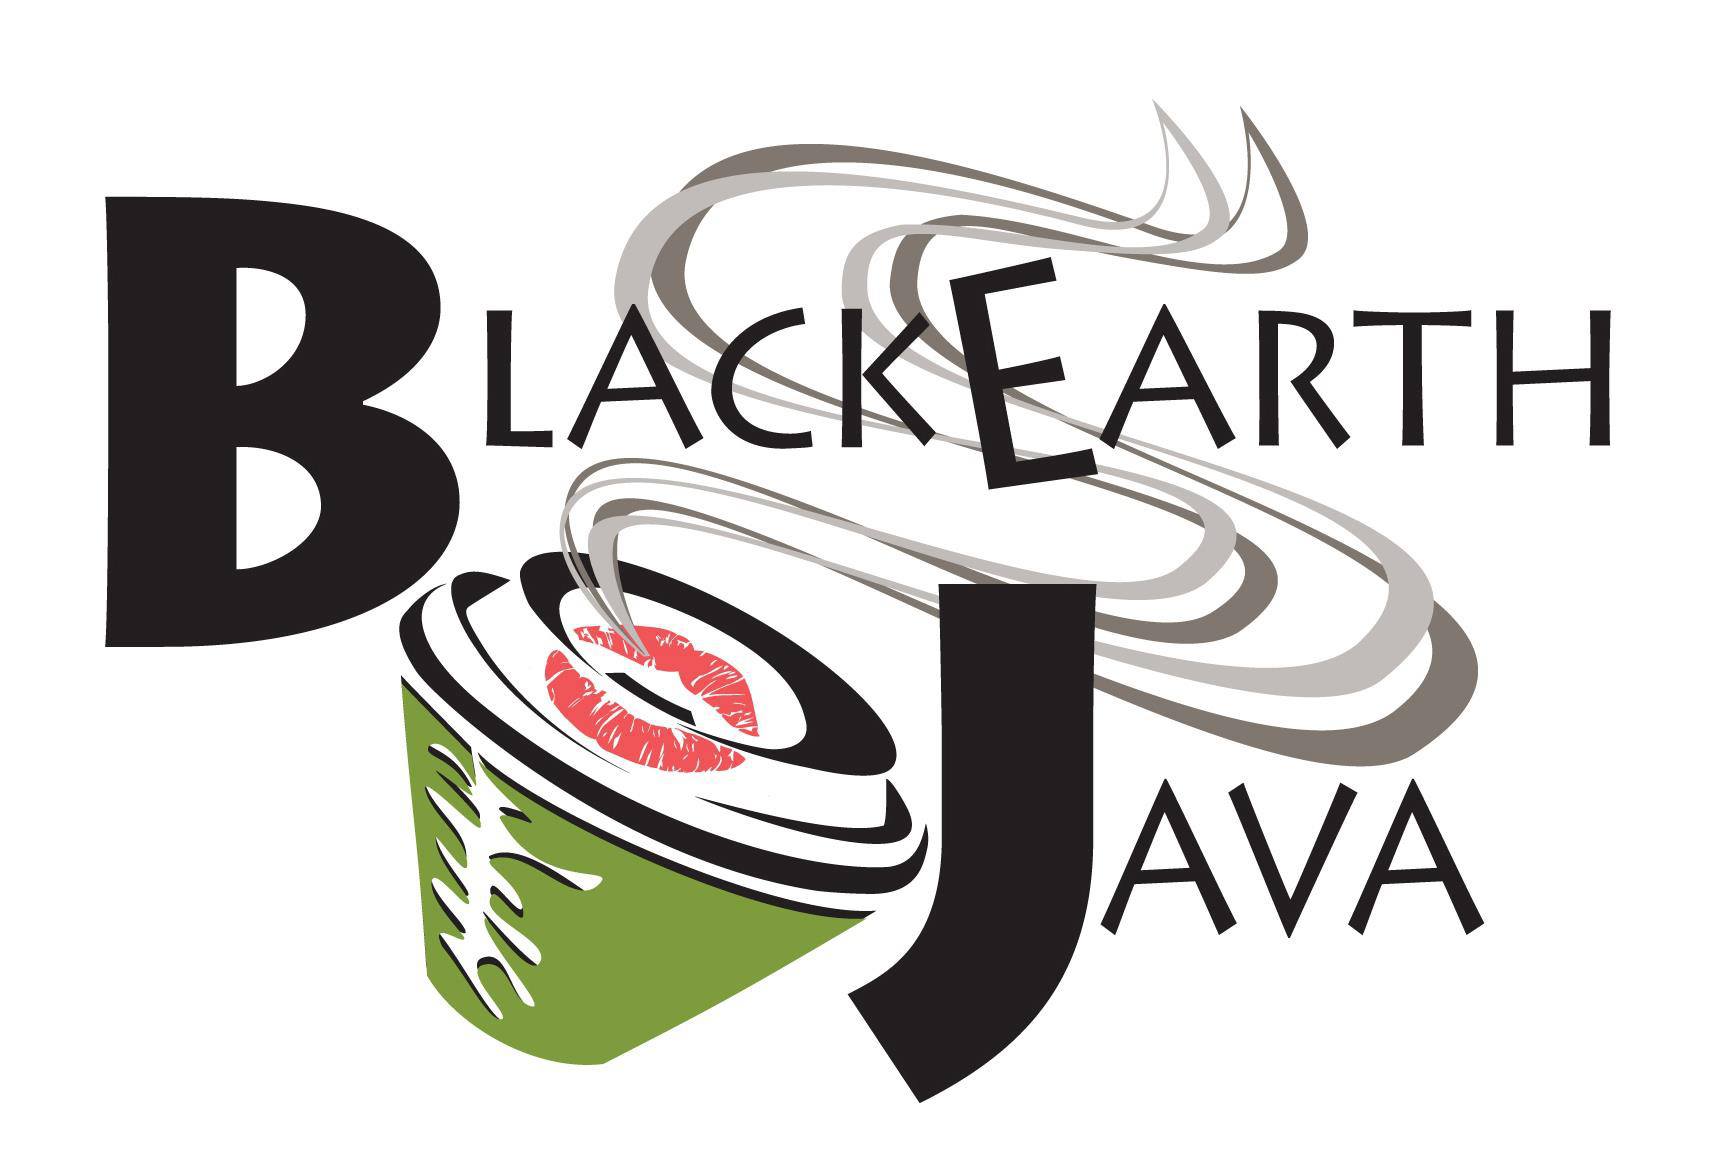 BlackEarth Java